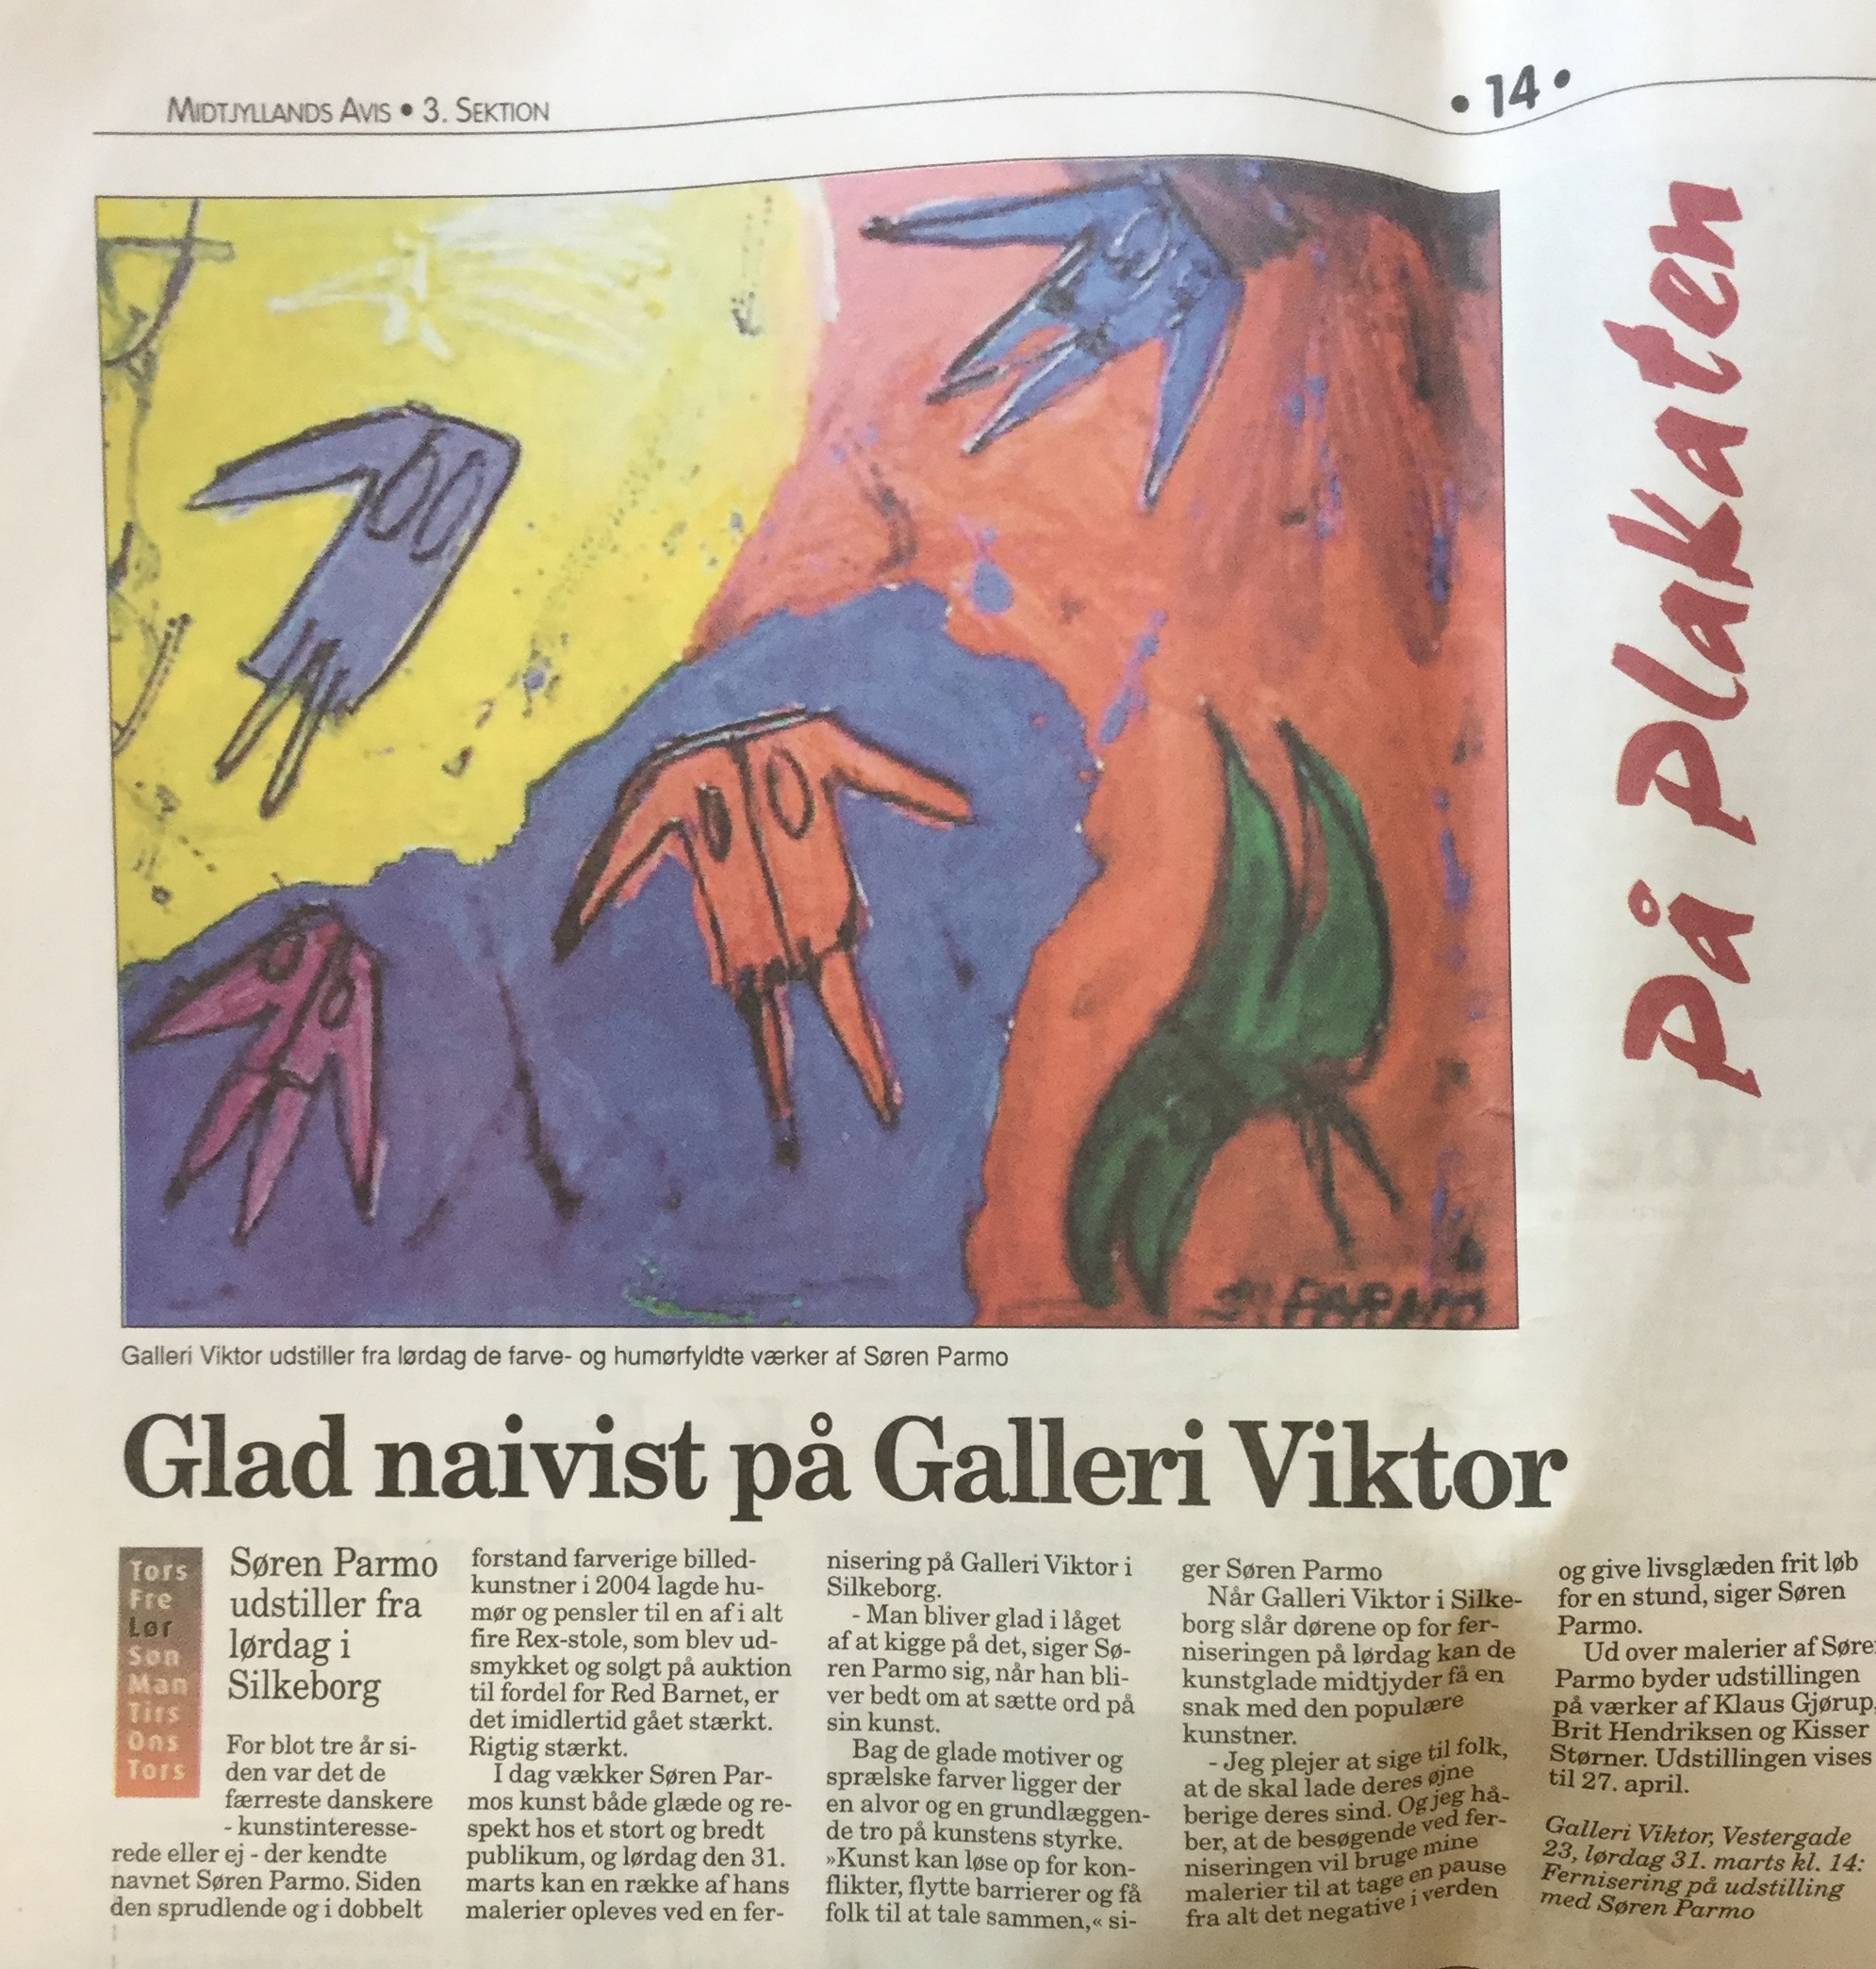 Glad naivist på Galleri Viktor